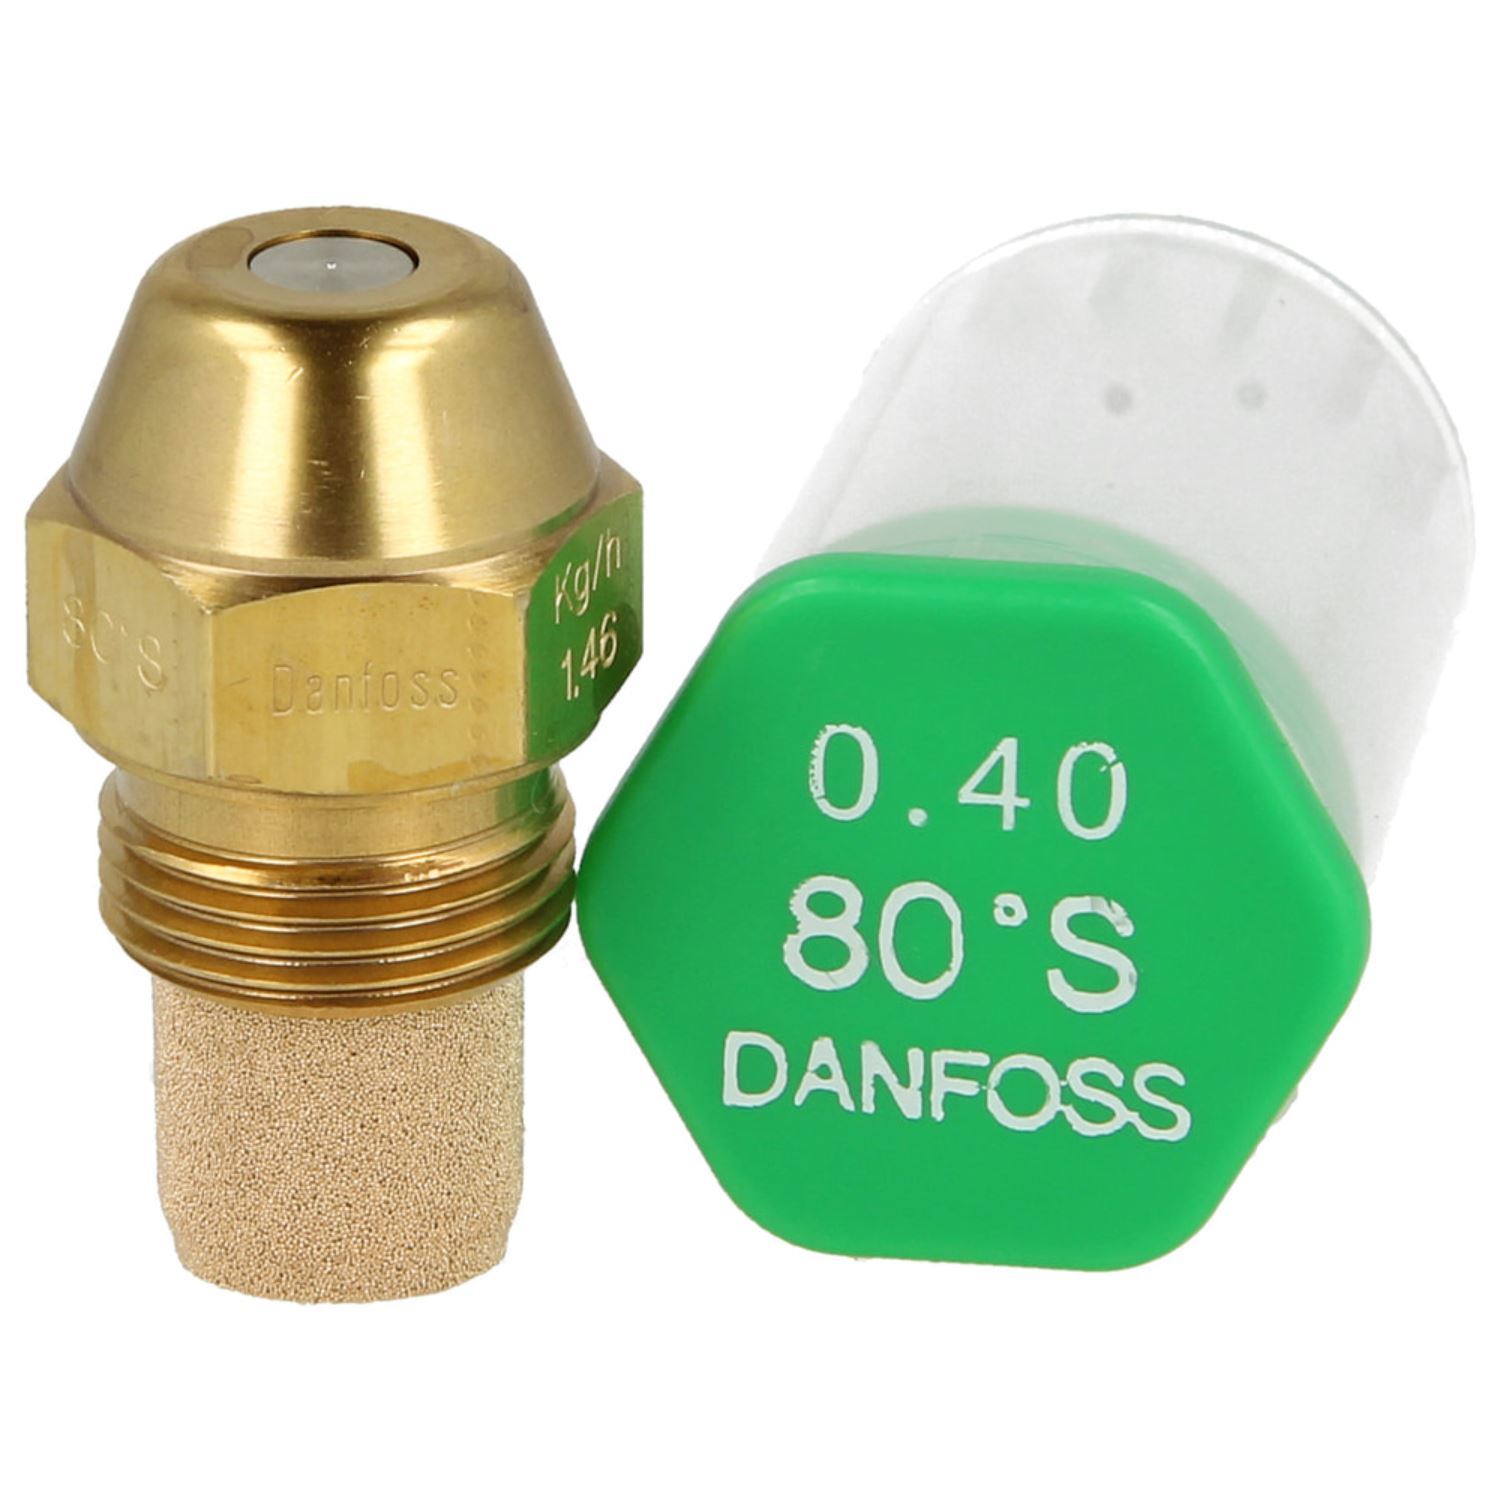 Danfoss-Öldüse 0,40 80°S-LE